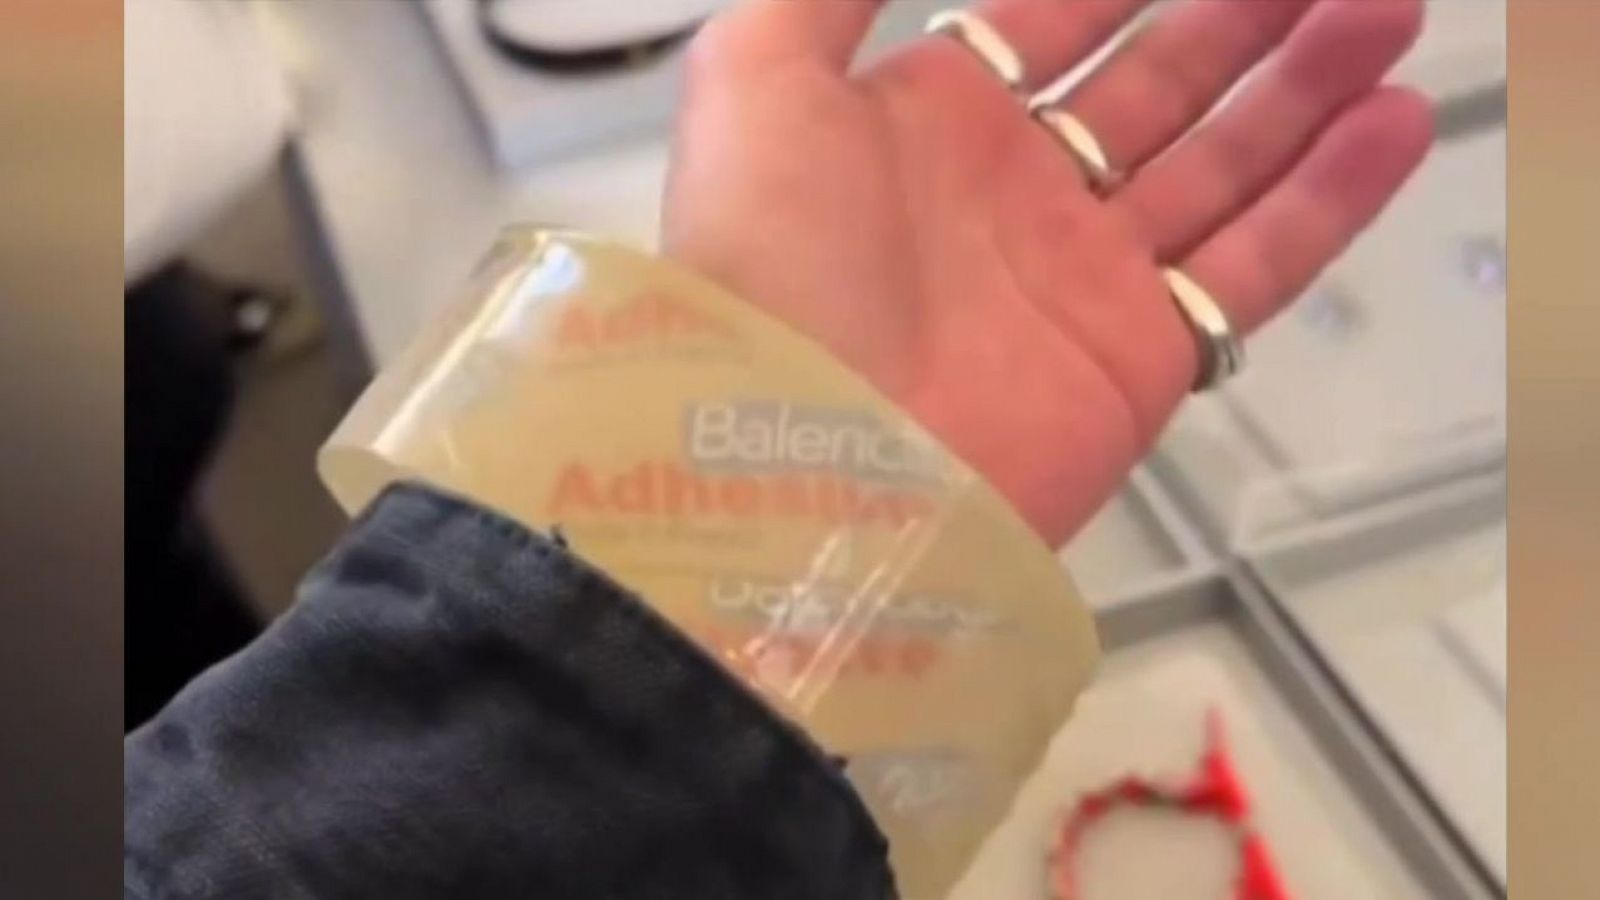 Polémica por una pulsera de Balenciaga inspirada en un rollo de celofán